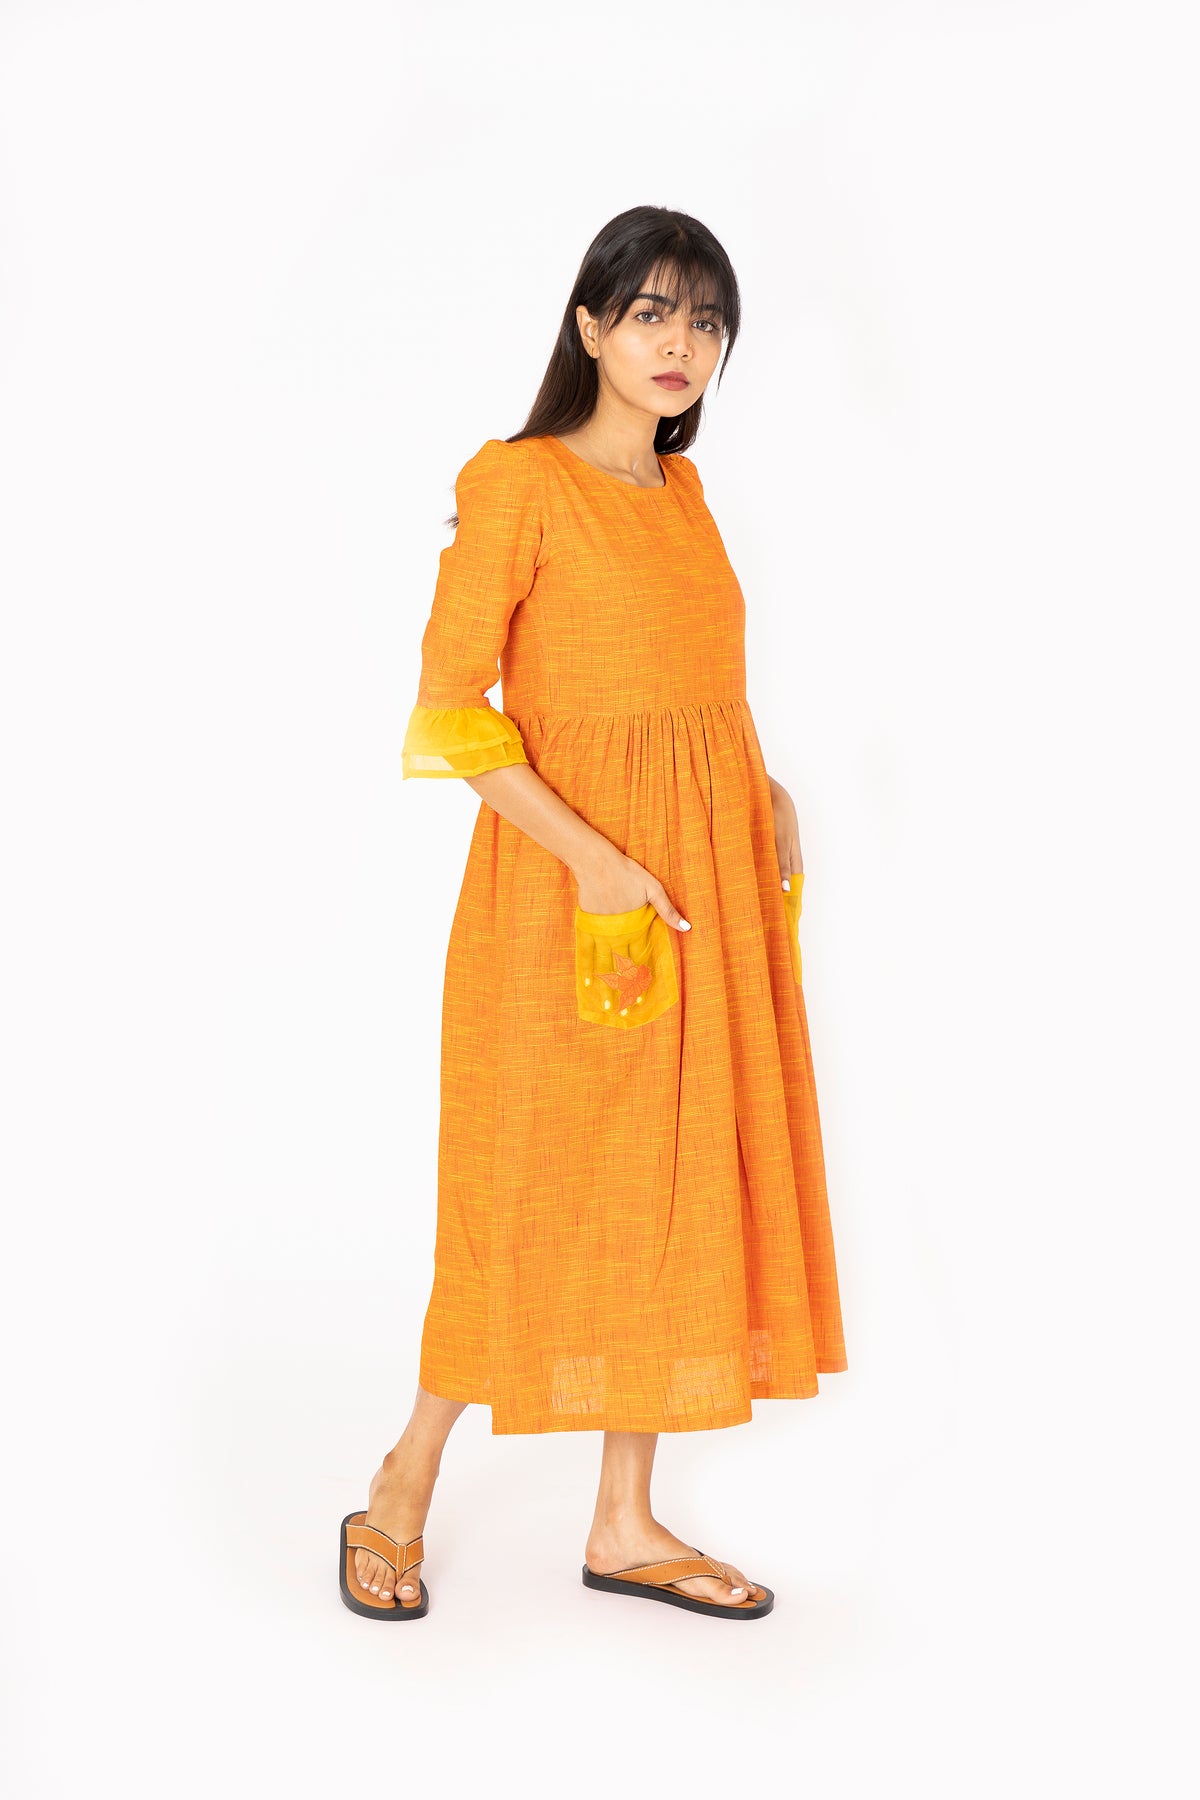 Orange Mittai Dress